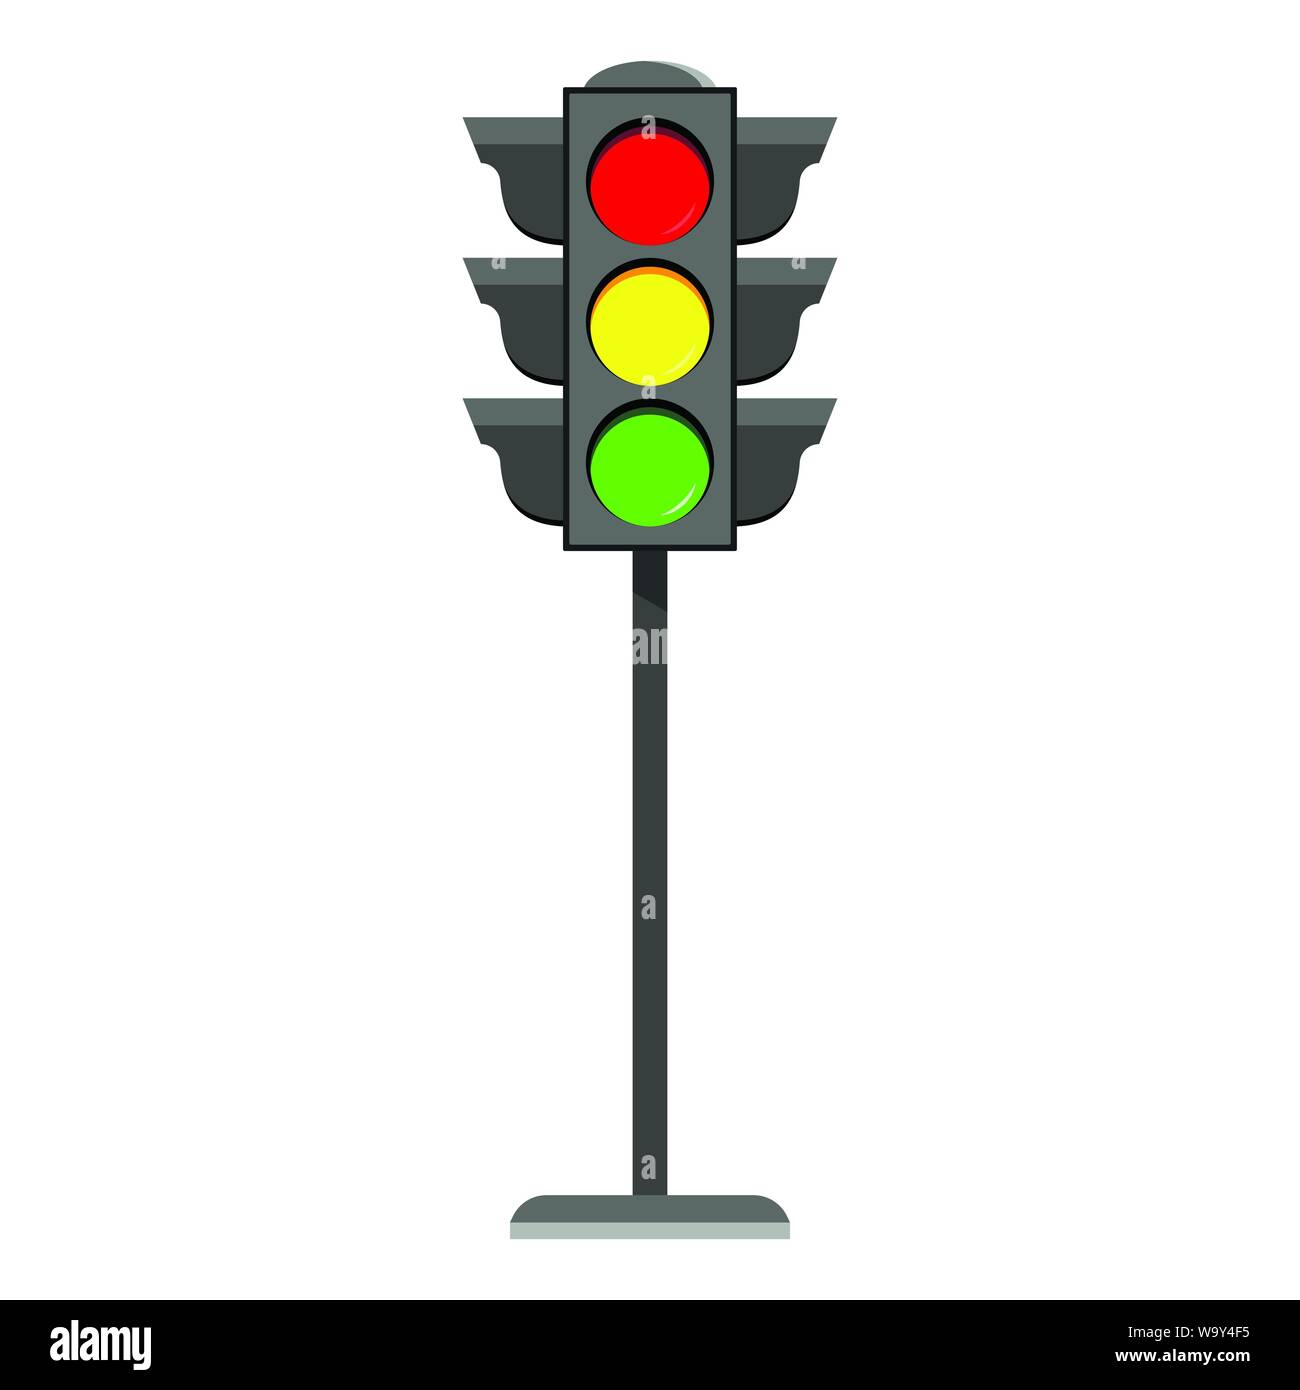 Semáforo permanente icono diseño plano horizontal típico de los semáforos en rojo, amarillo y verde. Ilustración del Vector